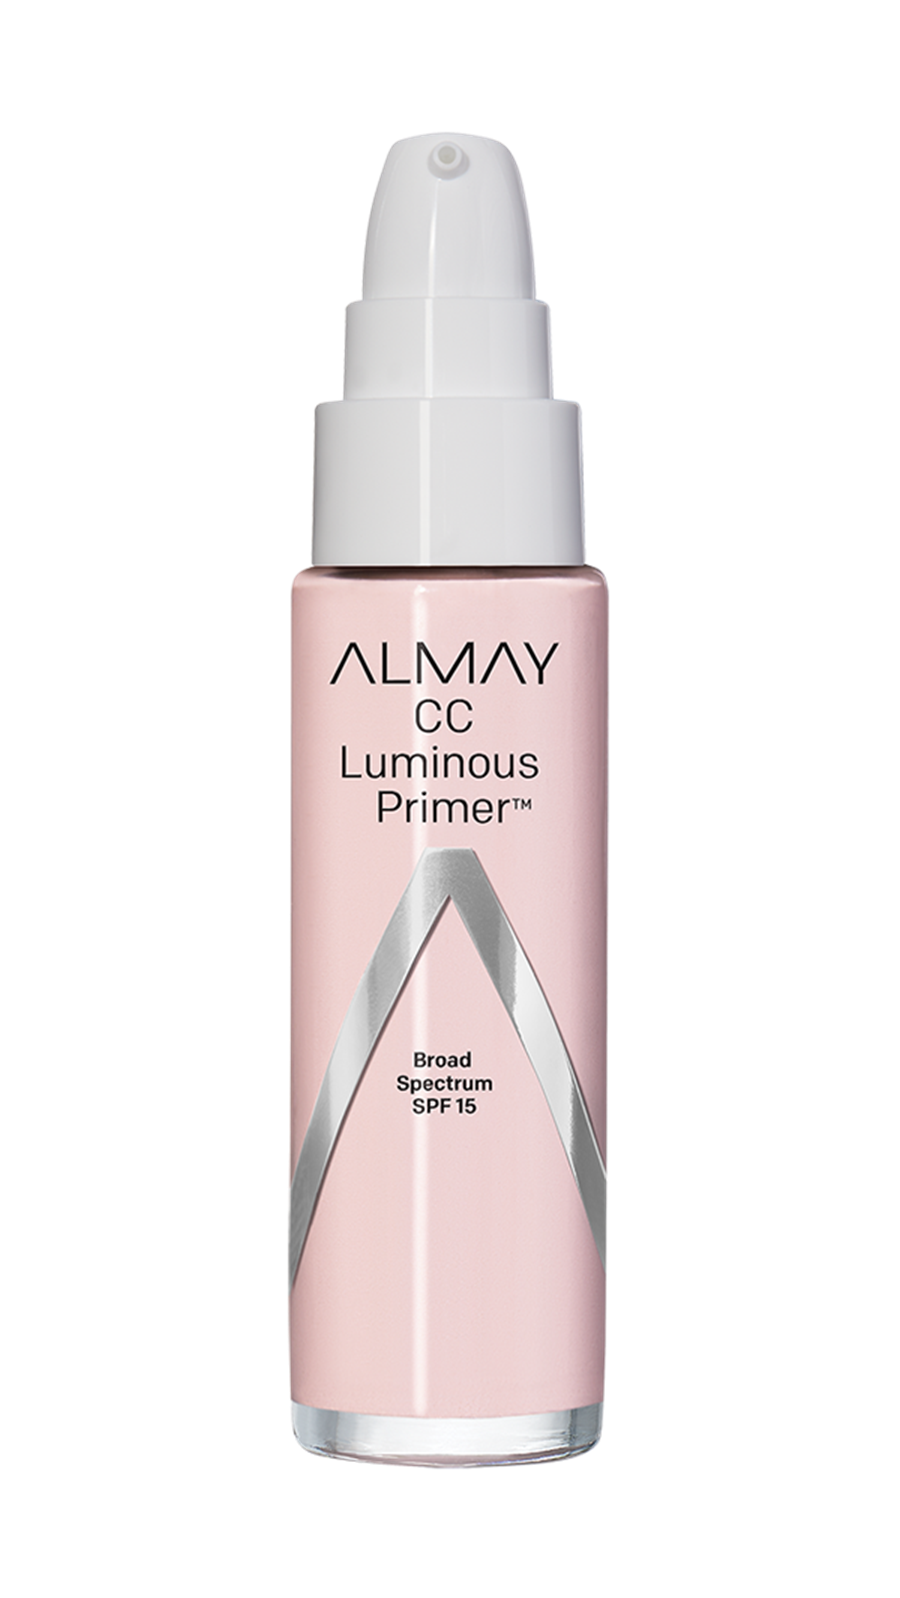 CC Luminous Primer™ Face Makeup - Almay